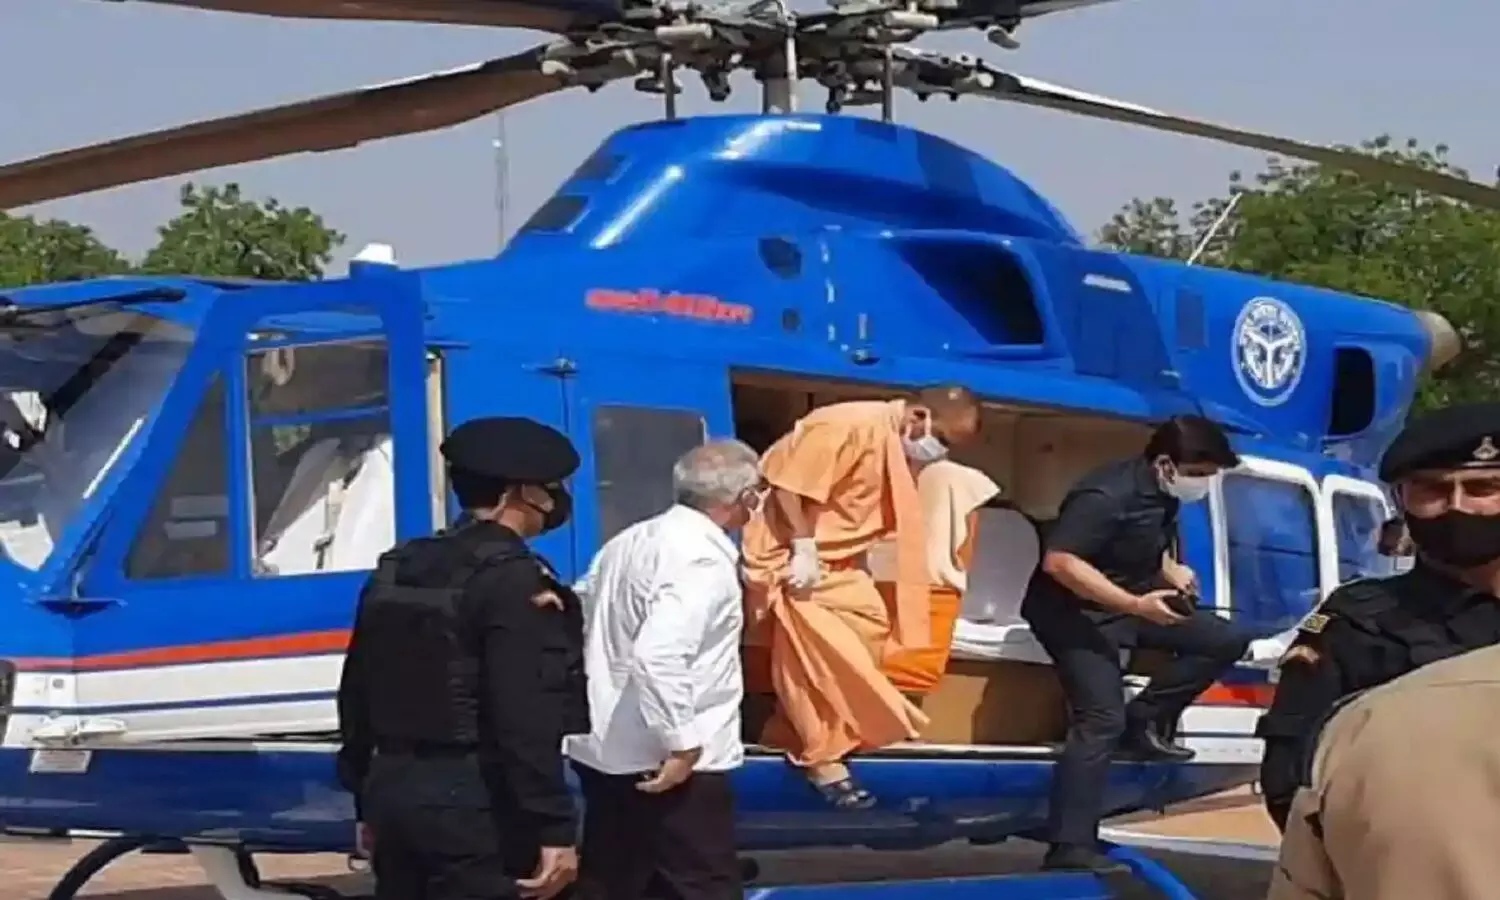 CM Yogis Helicopter Accident: 1500 फ़ीट ऊपर उड़ रहे सीएम योगी के हेलीकॉप्टर से टकराया पक्षी!